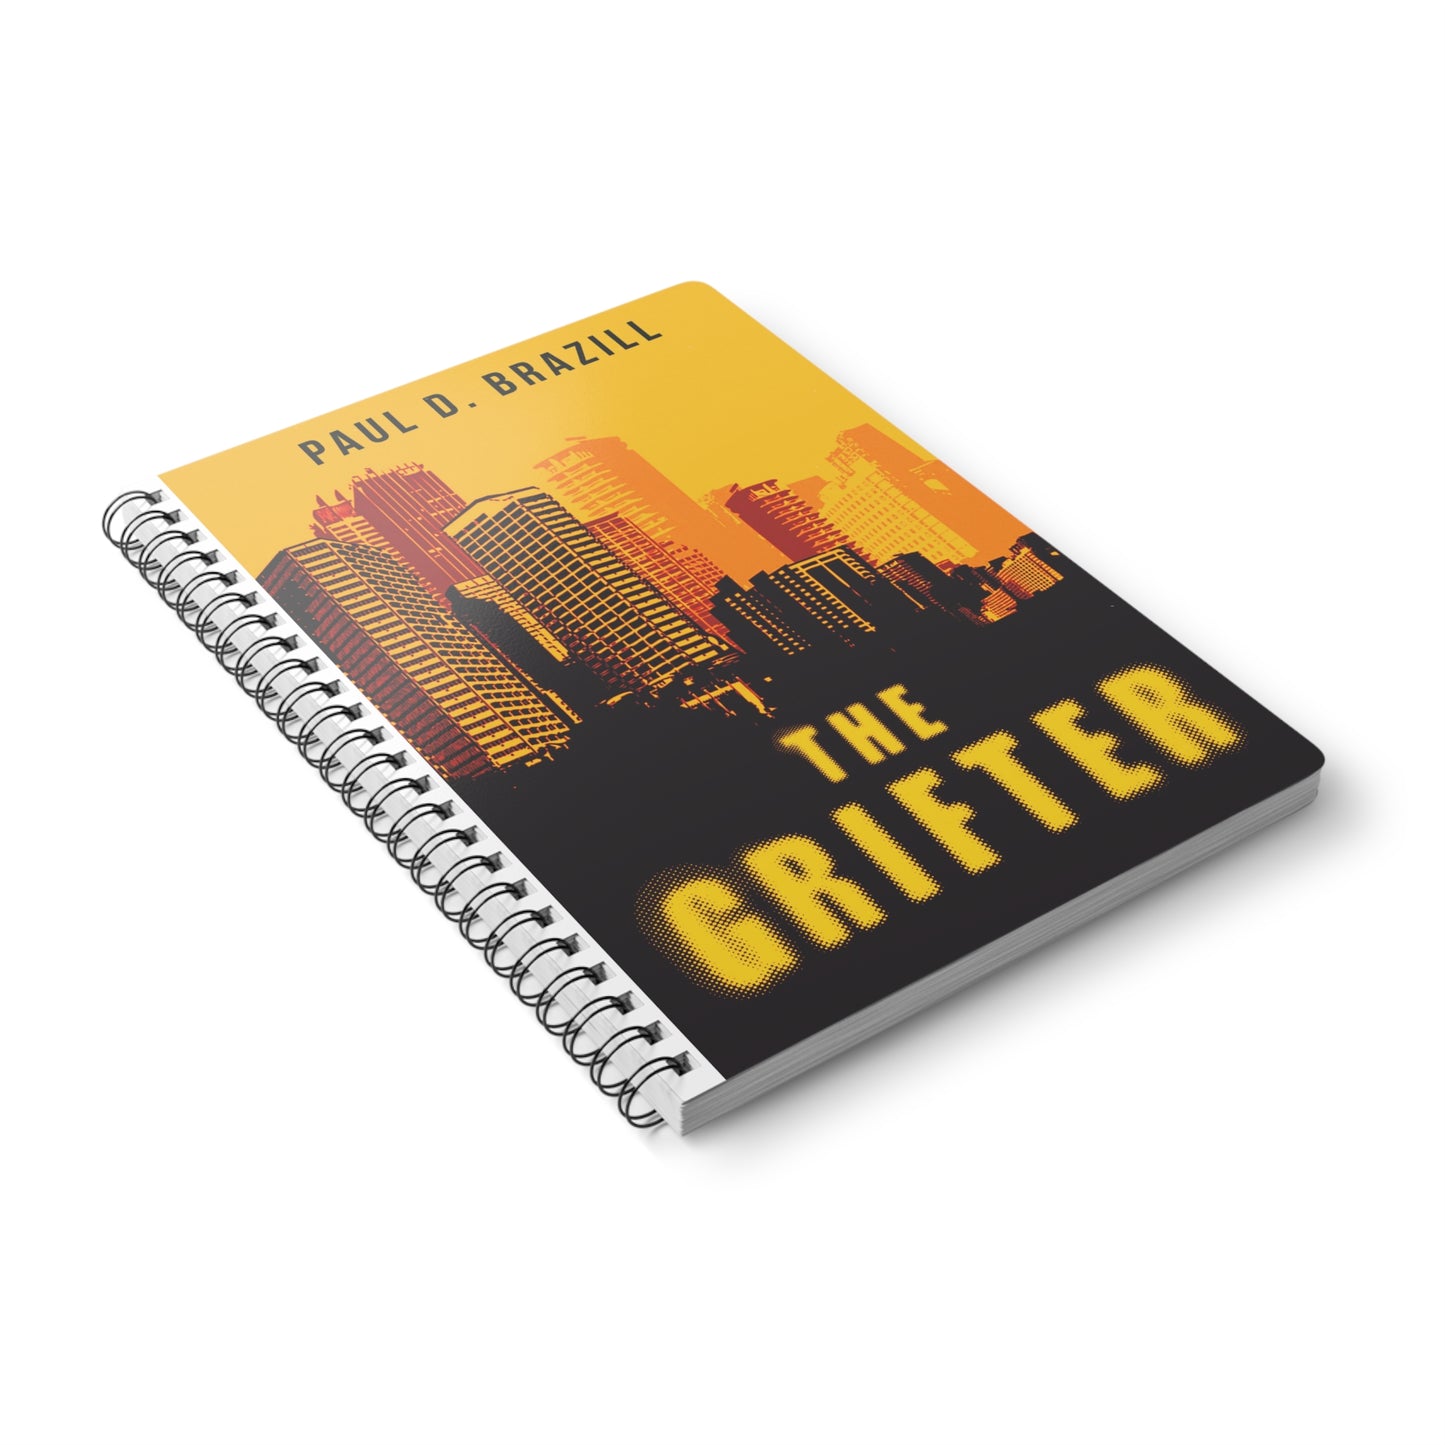 The Grifter - A5 Wirebound Notebook